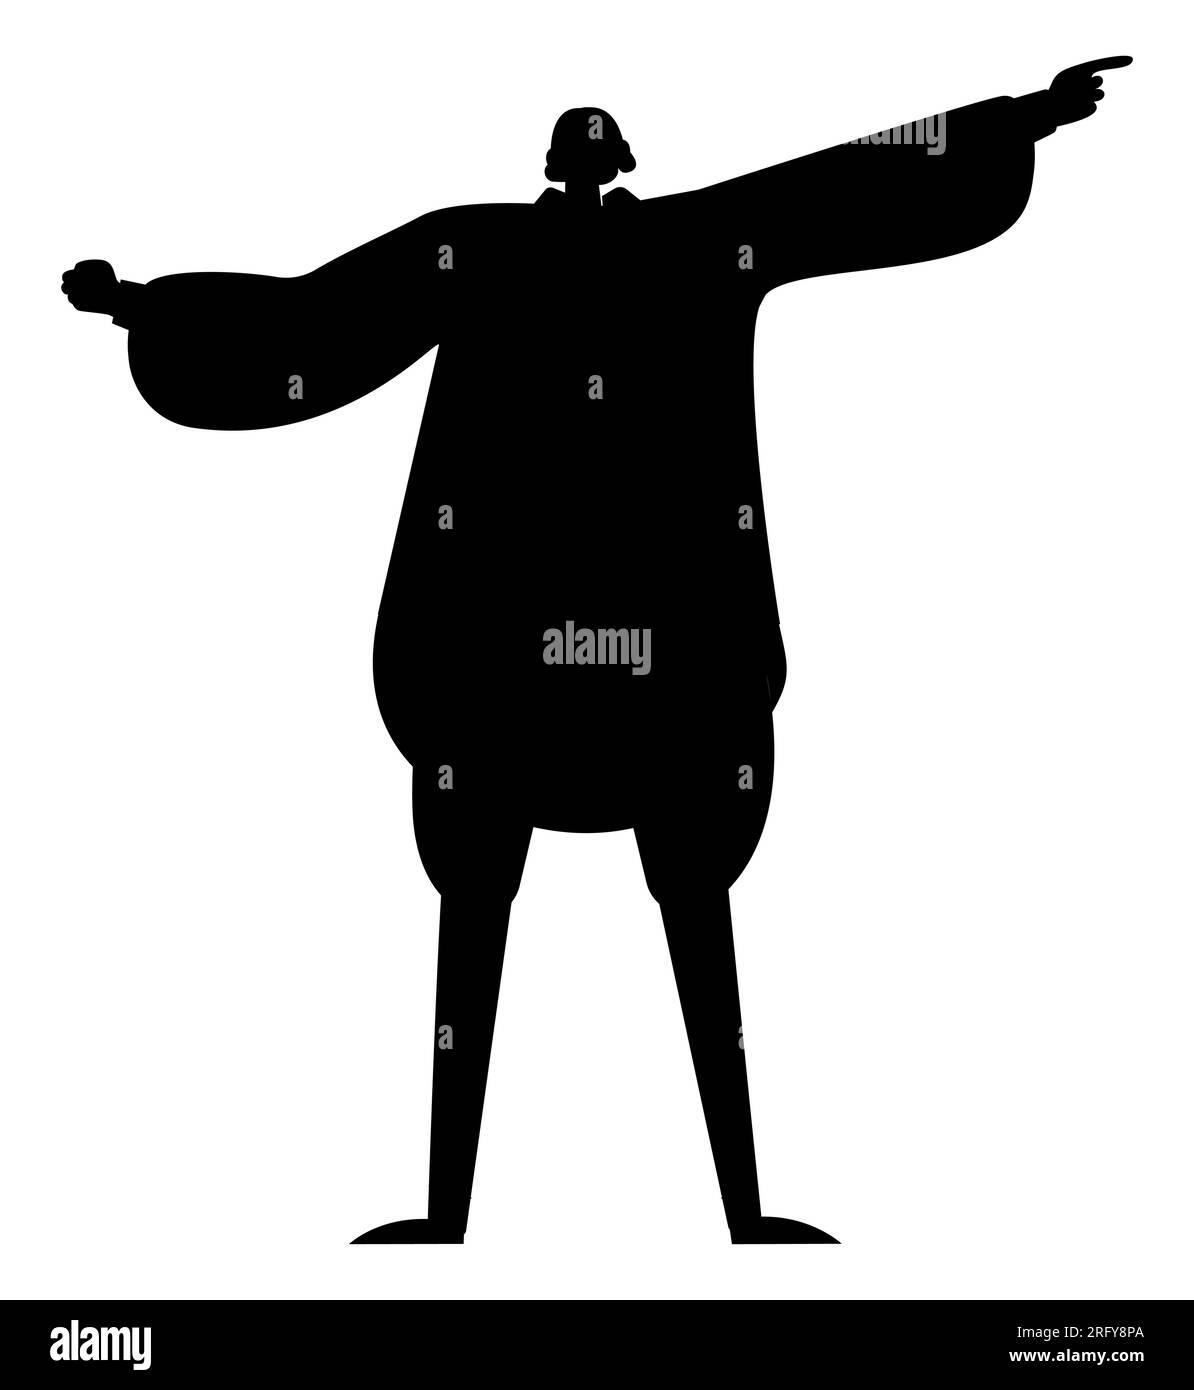 Silhouette noire d'un homme de bande dessinée portant des vêtements baggy et pointant vers quelque chose, vecteur isolé sur fond blanc Illustration de Vecteur